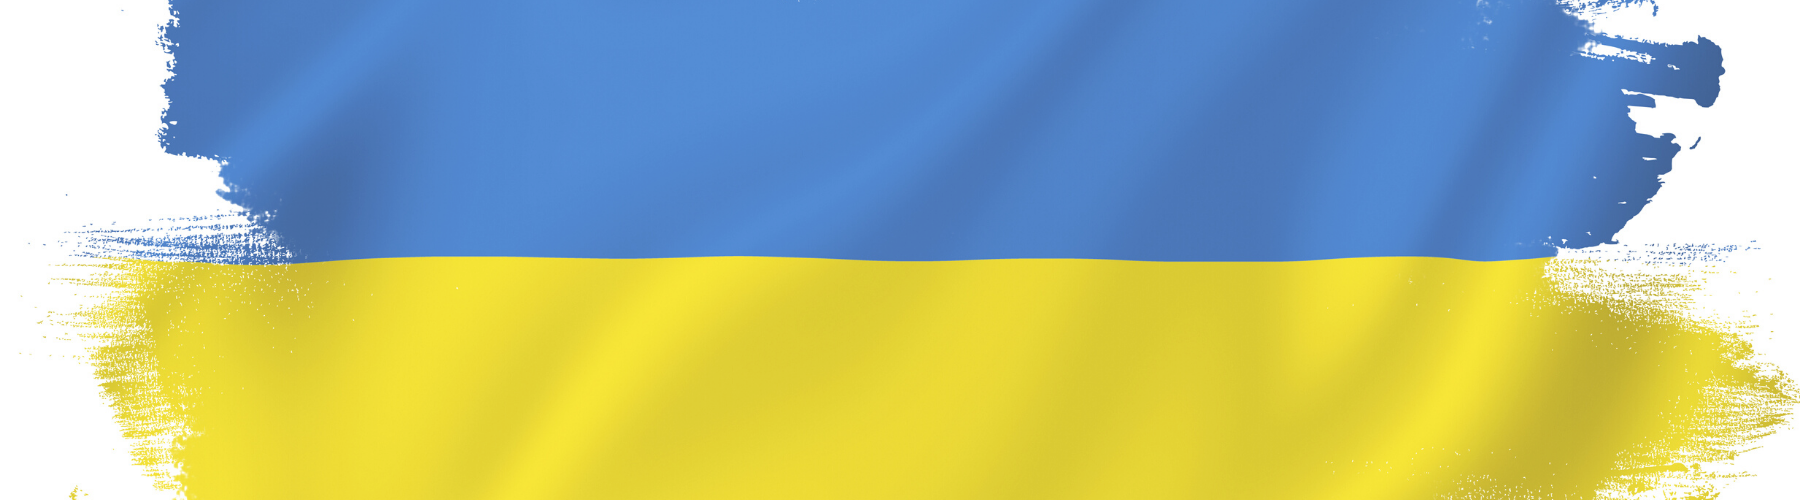 Paint colors to symbolize Ukraine Flag